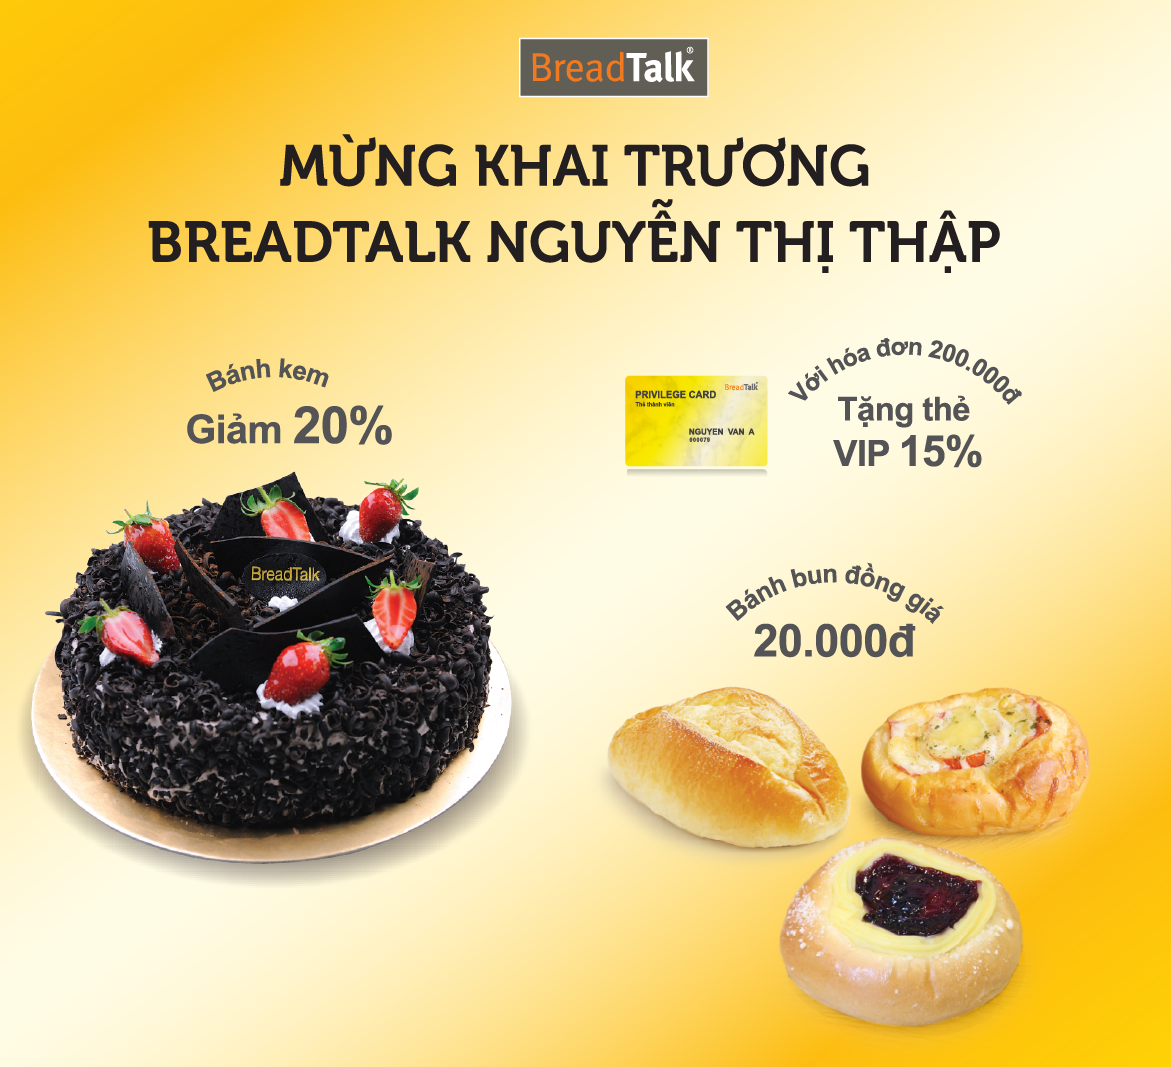 BreadTalk Nguyen Thi Thap PR